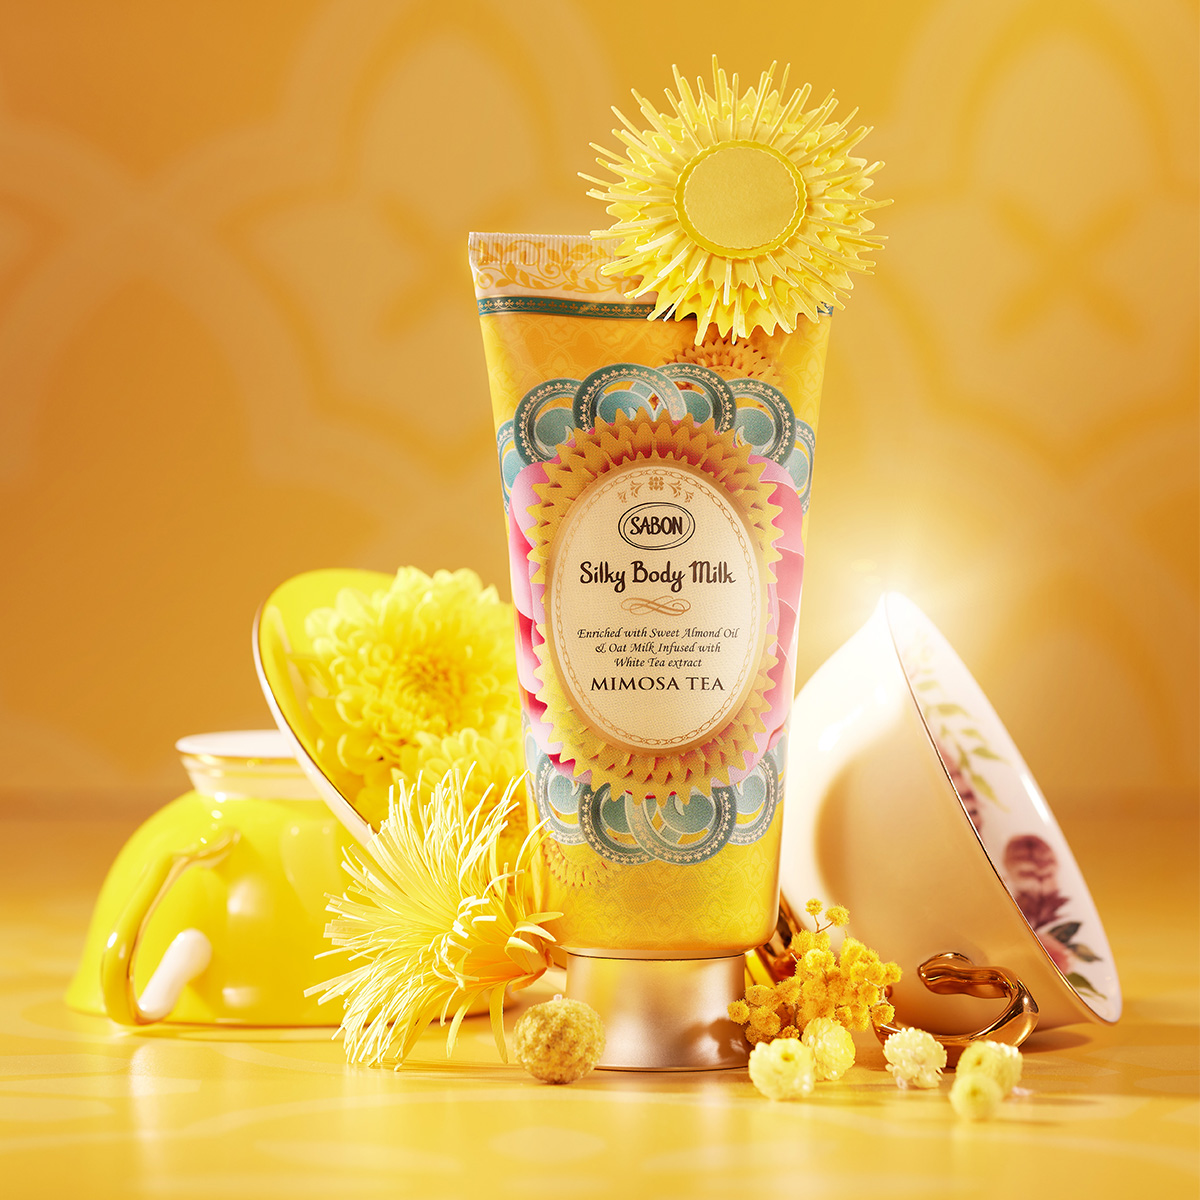 Silky Body Milk Mimosa Tea | 【サボン】ビューティーオイル シルキー 